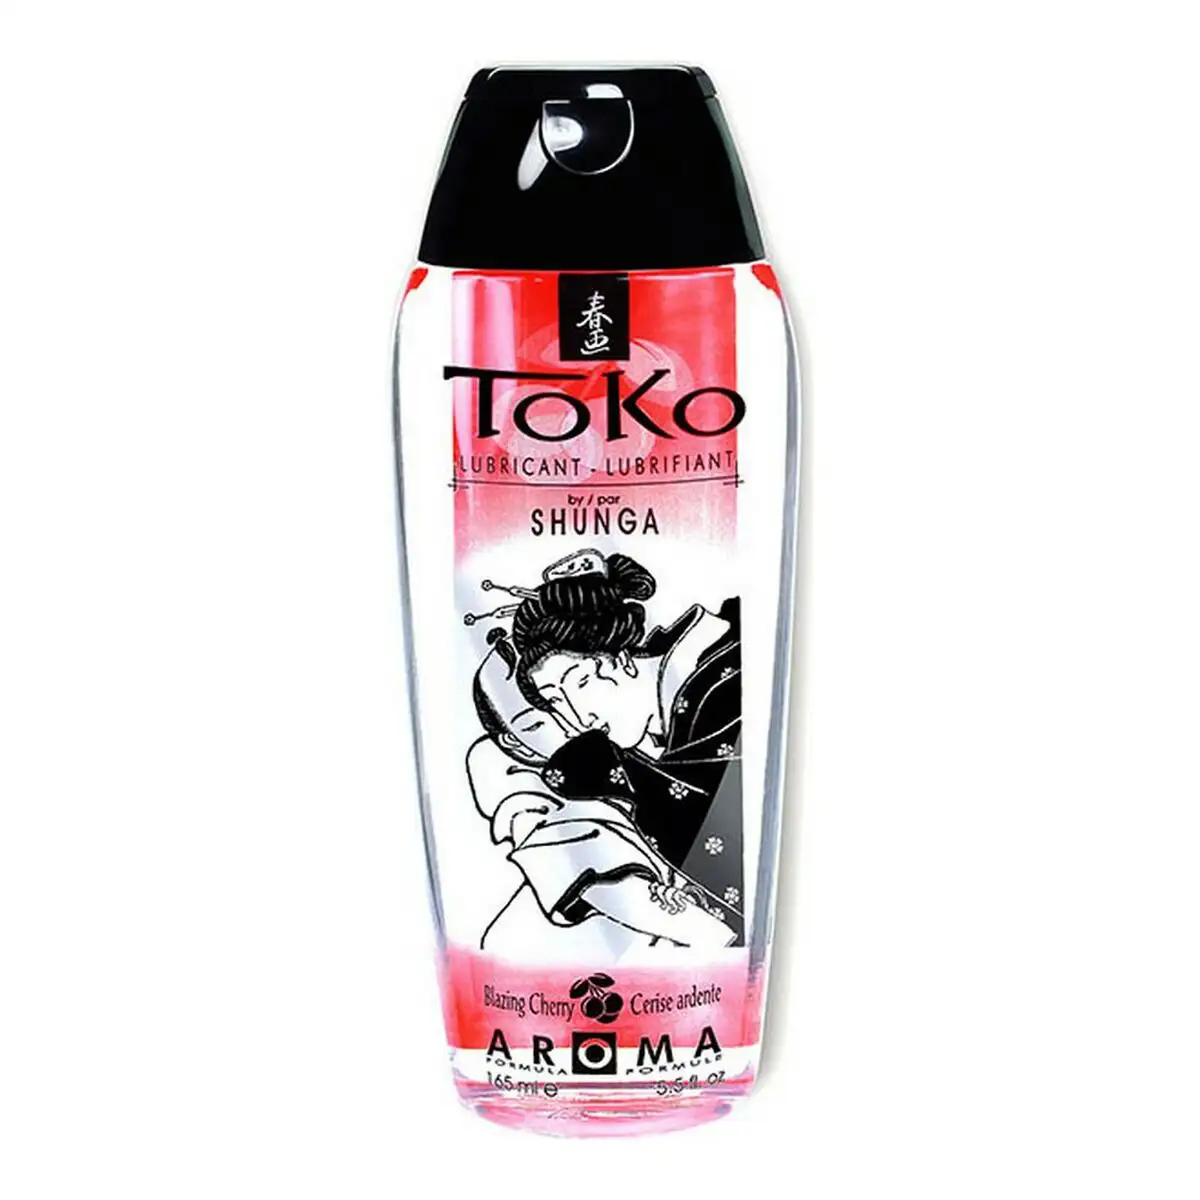 Toko lubrifiant fraise shunga sh6400 165 ml _4221. DIAYTAR SENEGAL - Votre Destination Shopping pour Tous. Parcourez notre boutique en ligne et découvrez une variété de produits pour satisfaire tous vos besoins et désirs.